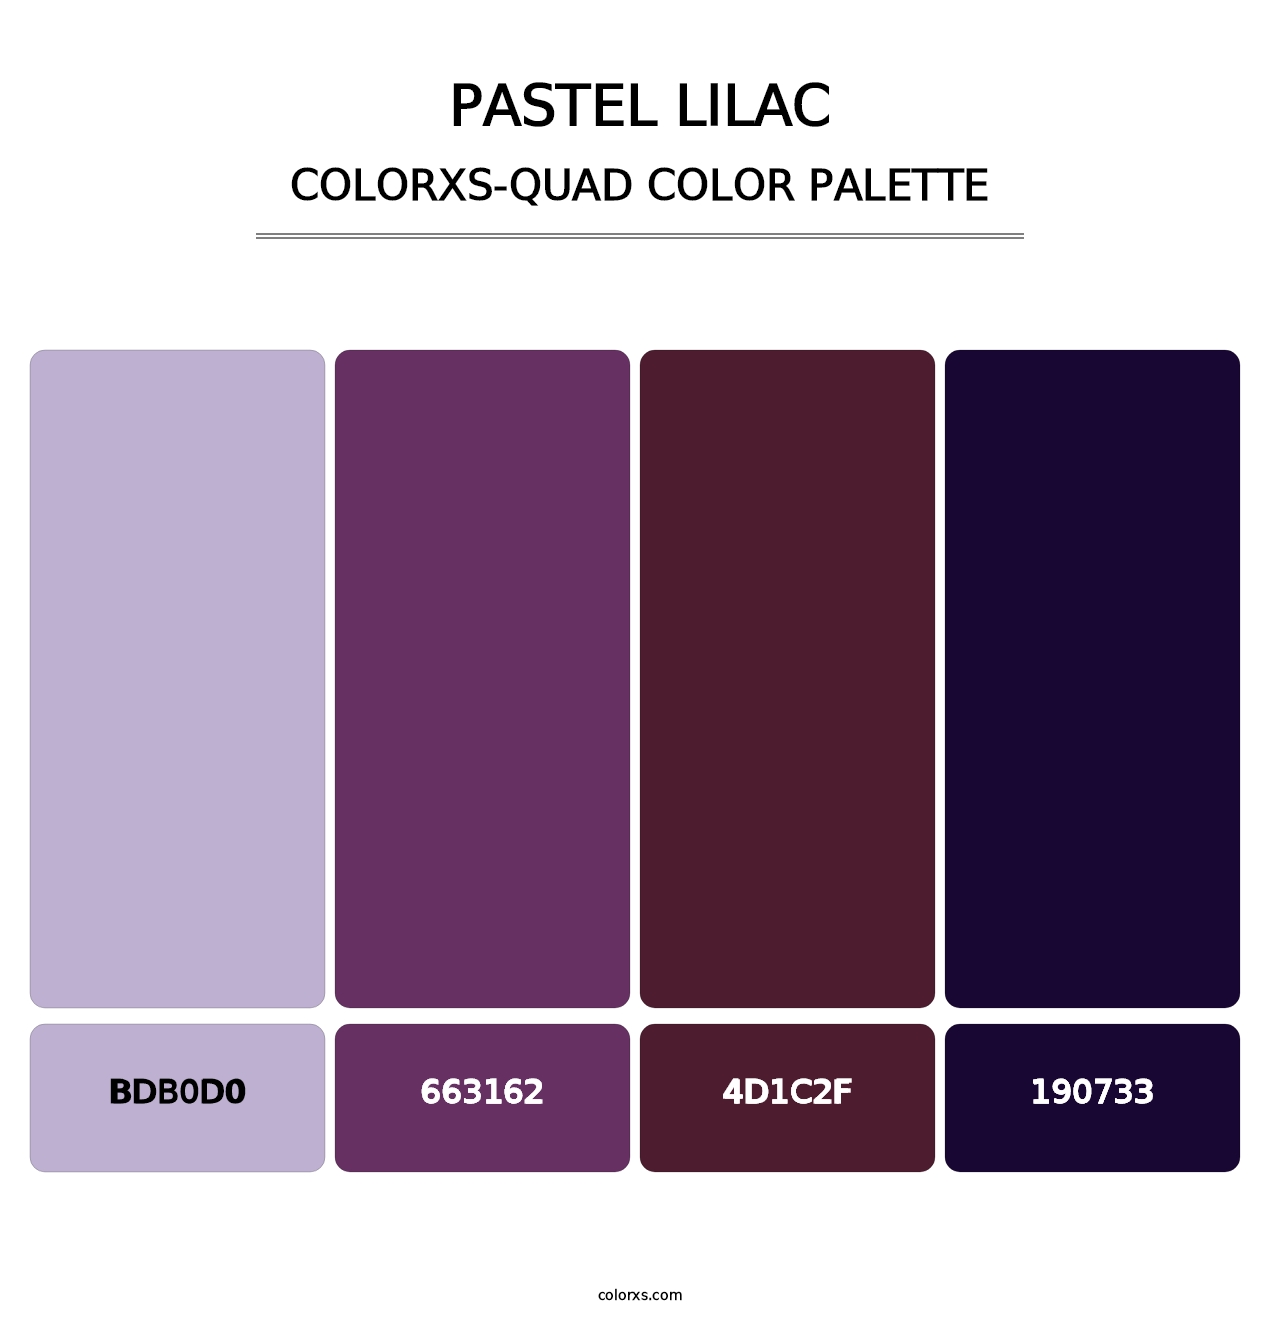 Pastel Lilac - Colorxs Quad Palette